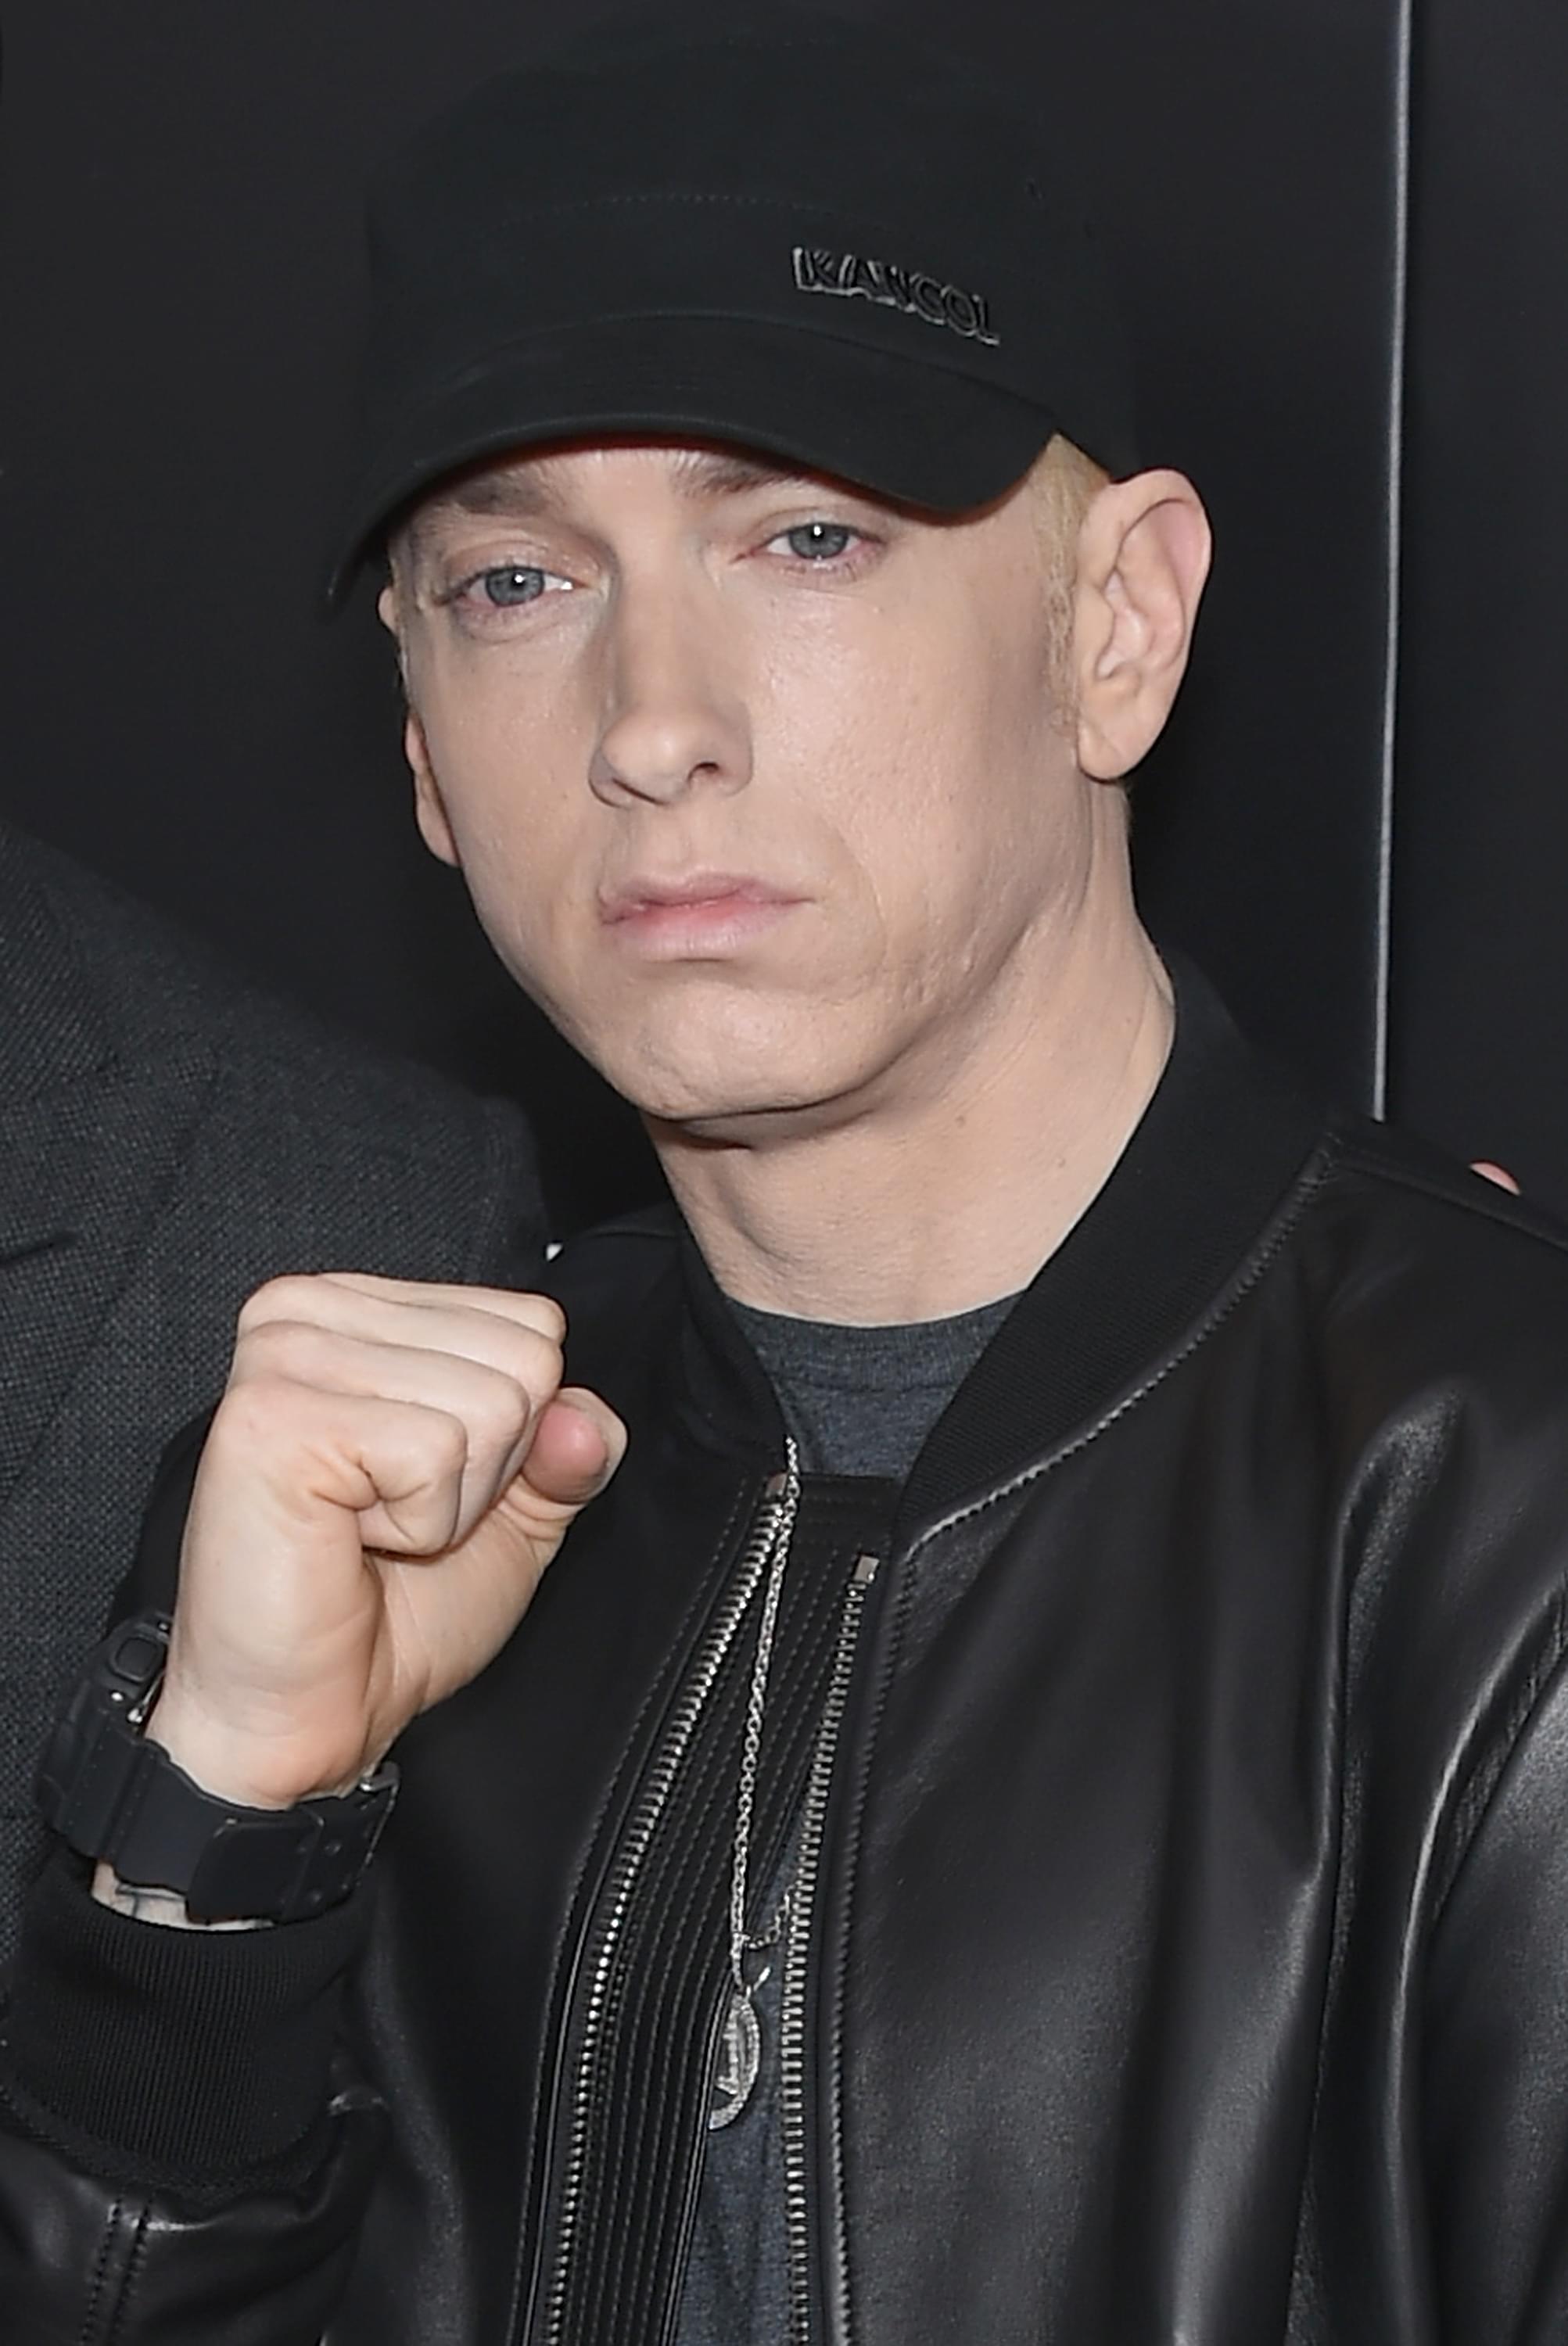 Eminem Calls Out Donald Trump On Big Sean’s “No Favors” [LISTEN]